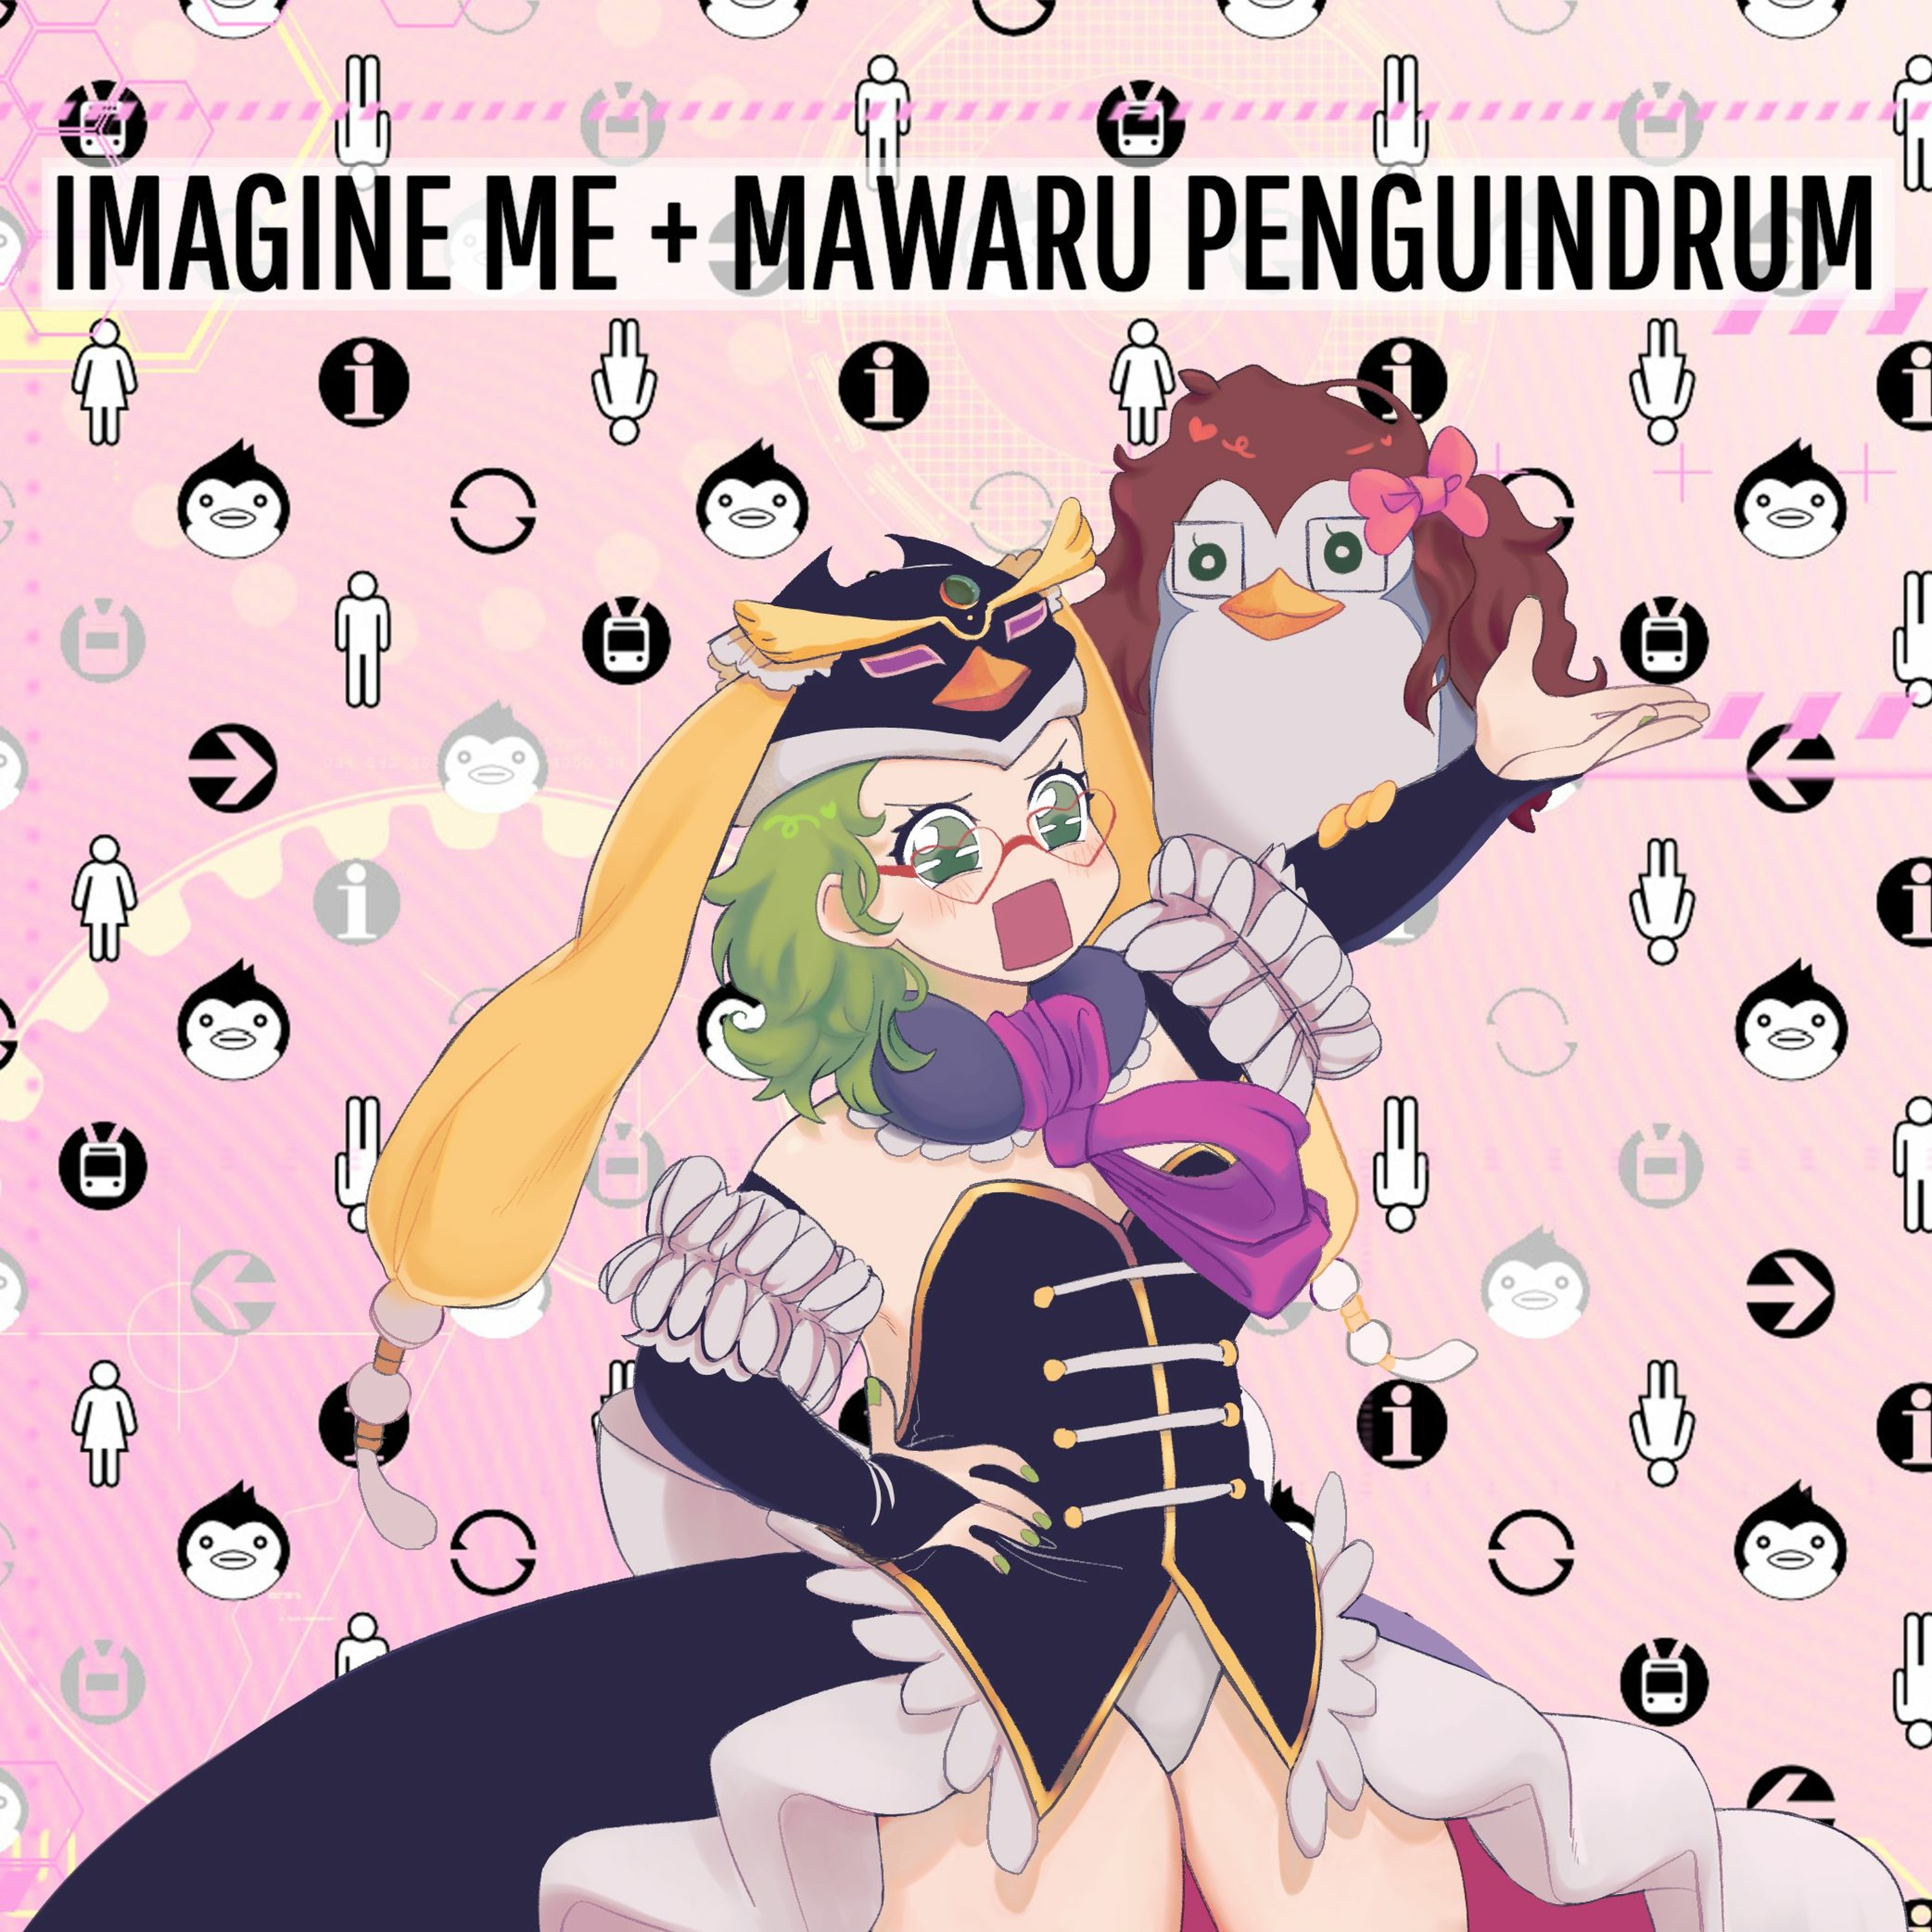 Episode 02 - Penguindrum of Madagascar